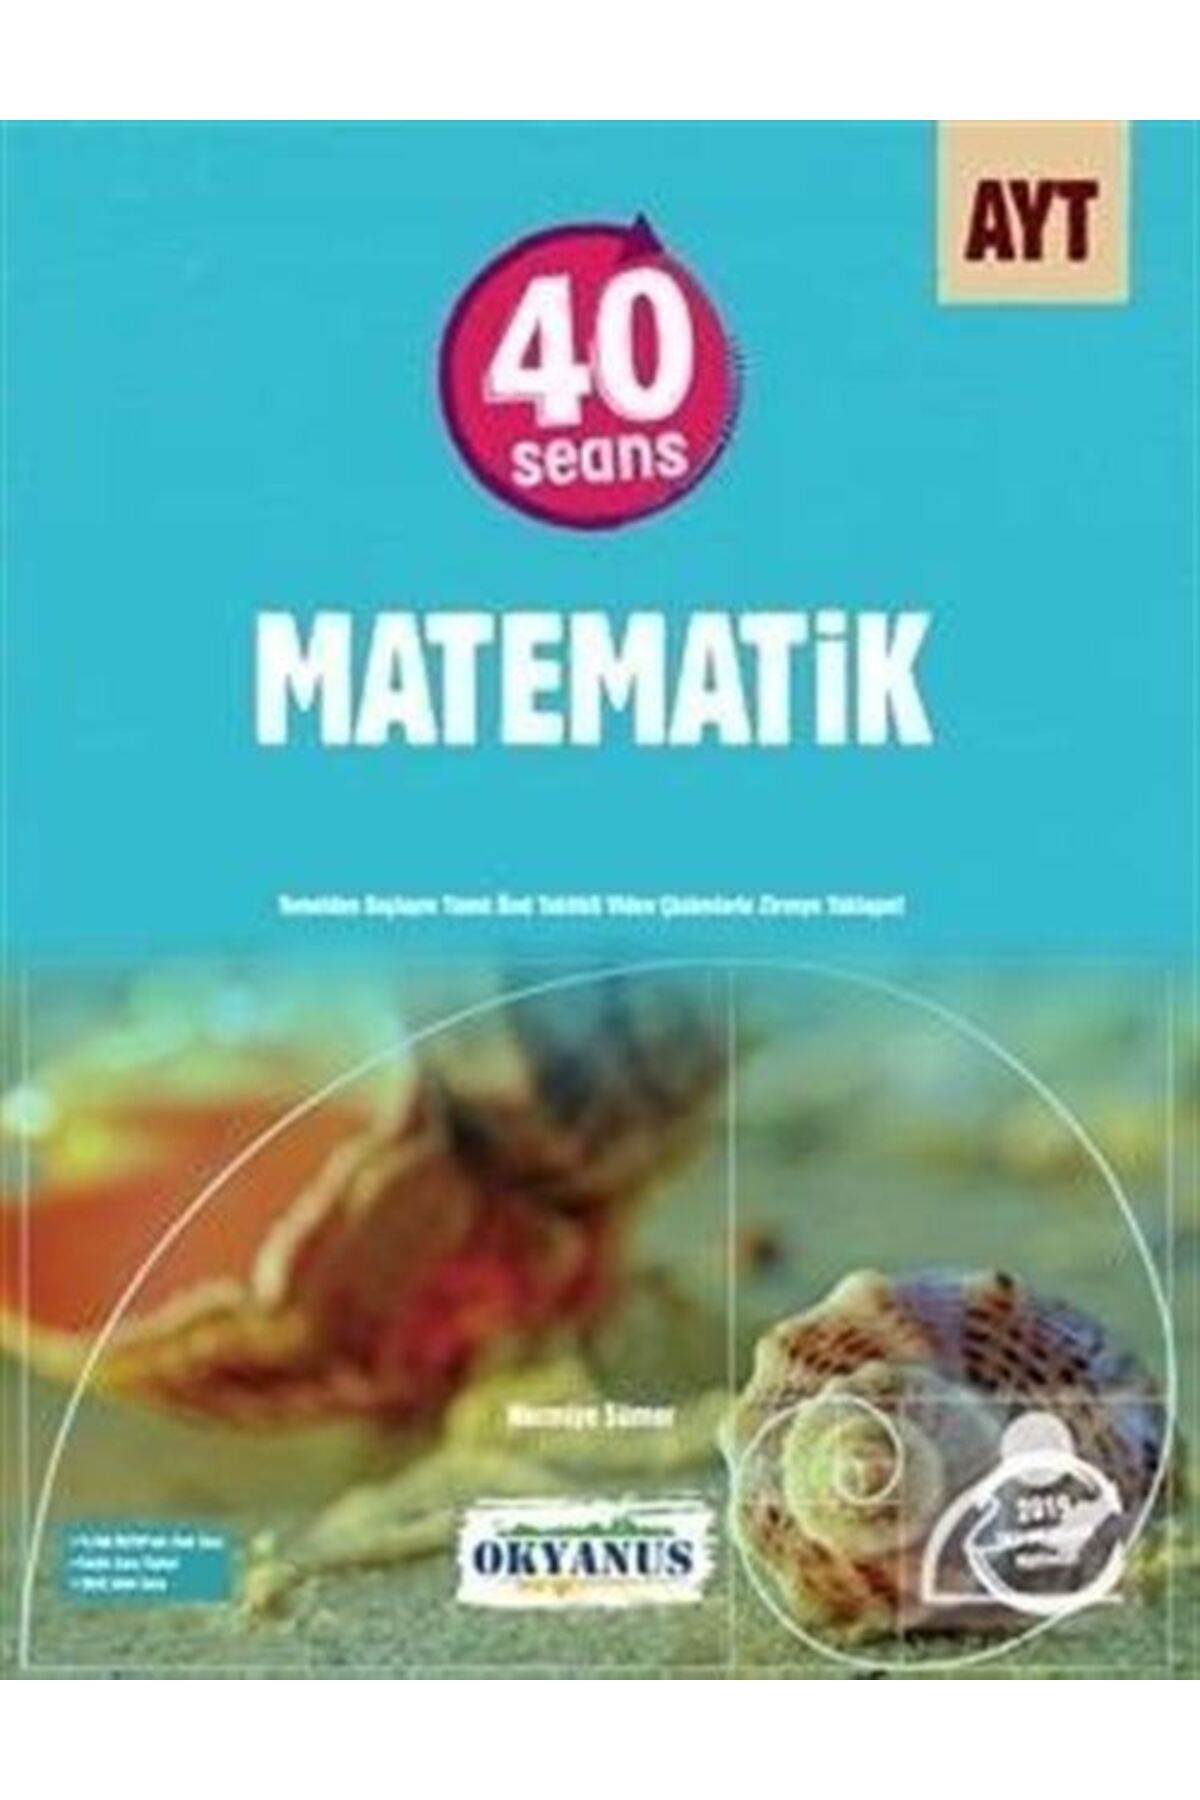 Okyanus Yayınları Ayt 40 Seans Matematik